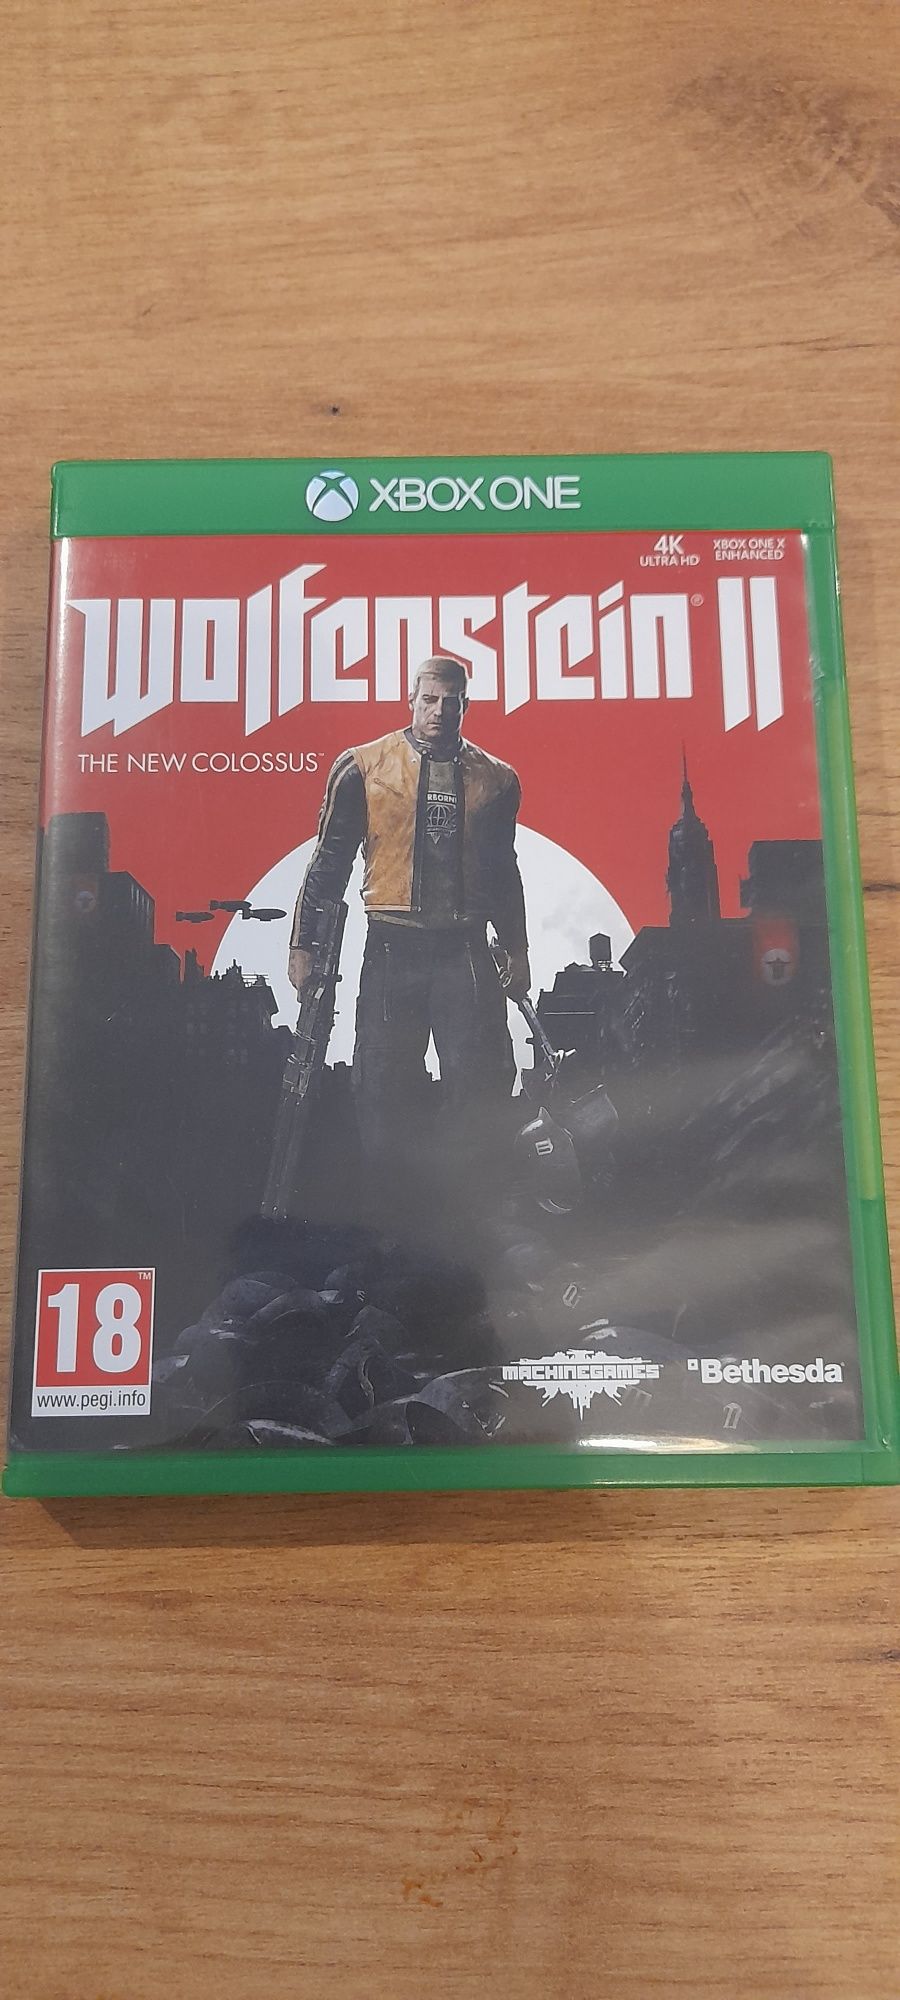 Wolfenstein II xbox one